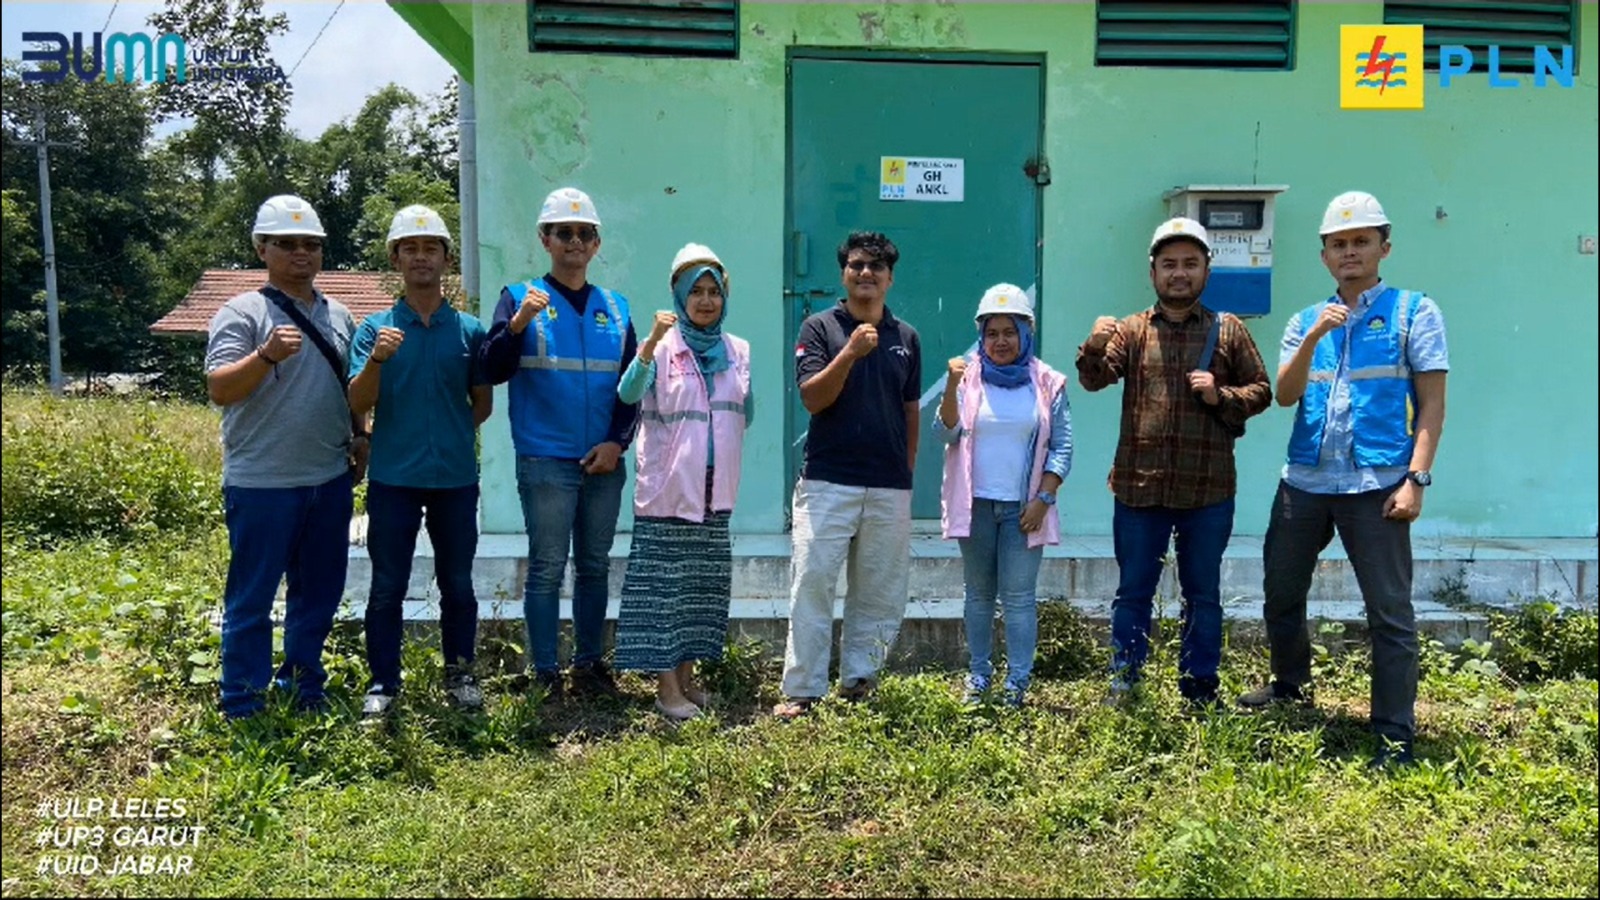 Mulai Aktivitas Produksi, PLN UP3 Garut Energize PT. Albasia Nusa Karya dengan Kapasitas Daya 345 kVA